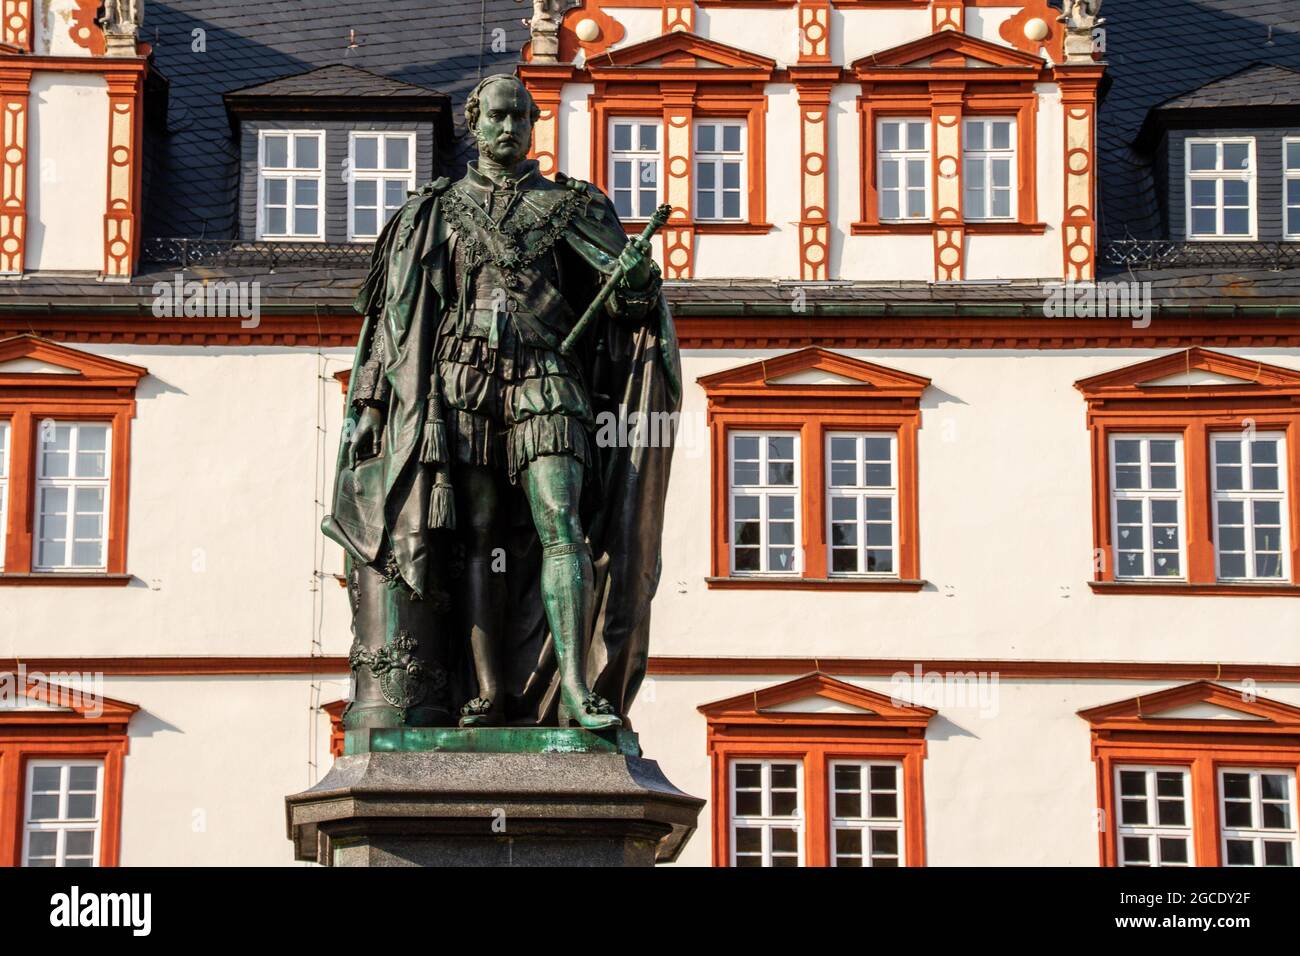 Coburg, Alemania, 17 de julio de 2021. Monumento al Príncipe Alberto de Saxe-Coburg Gotha, Duque de Sajonia, Plaza Marktplatz y casa histórica de la ciudad, Coburg, UPP Foto de stock